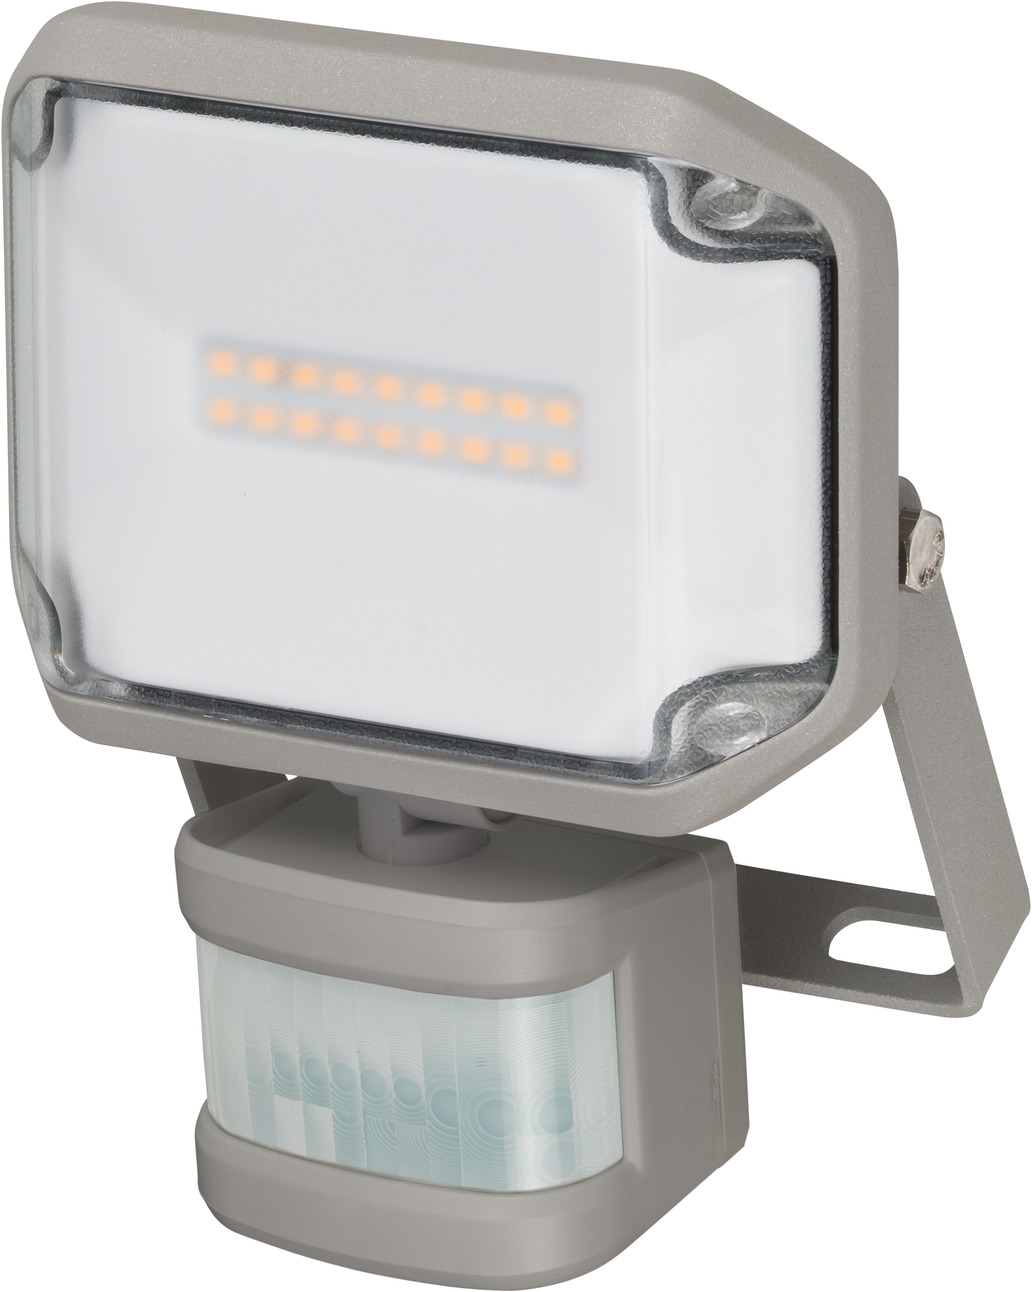 Projecteur LED avec détecteur de présence -20W Blanc Chaud